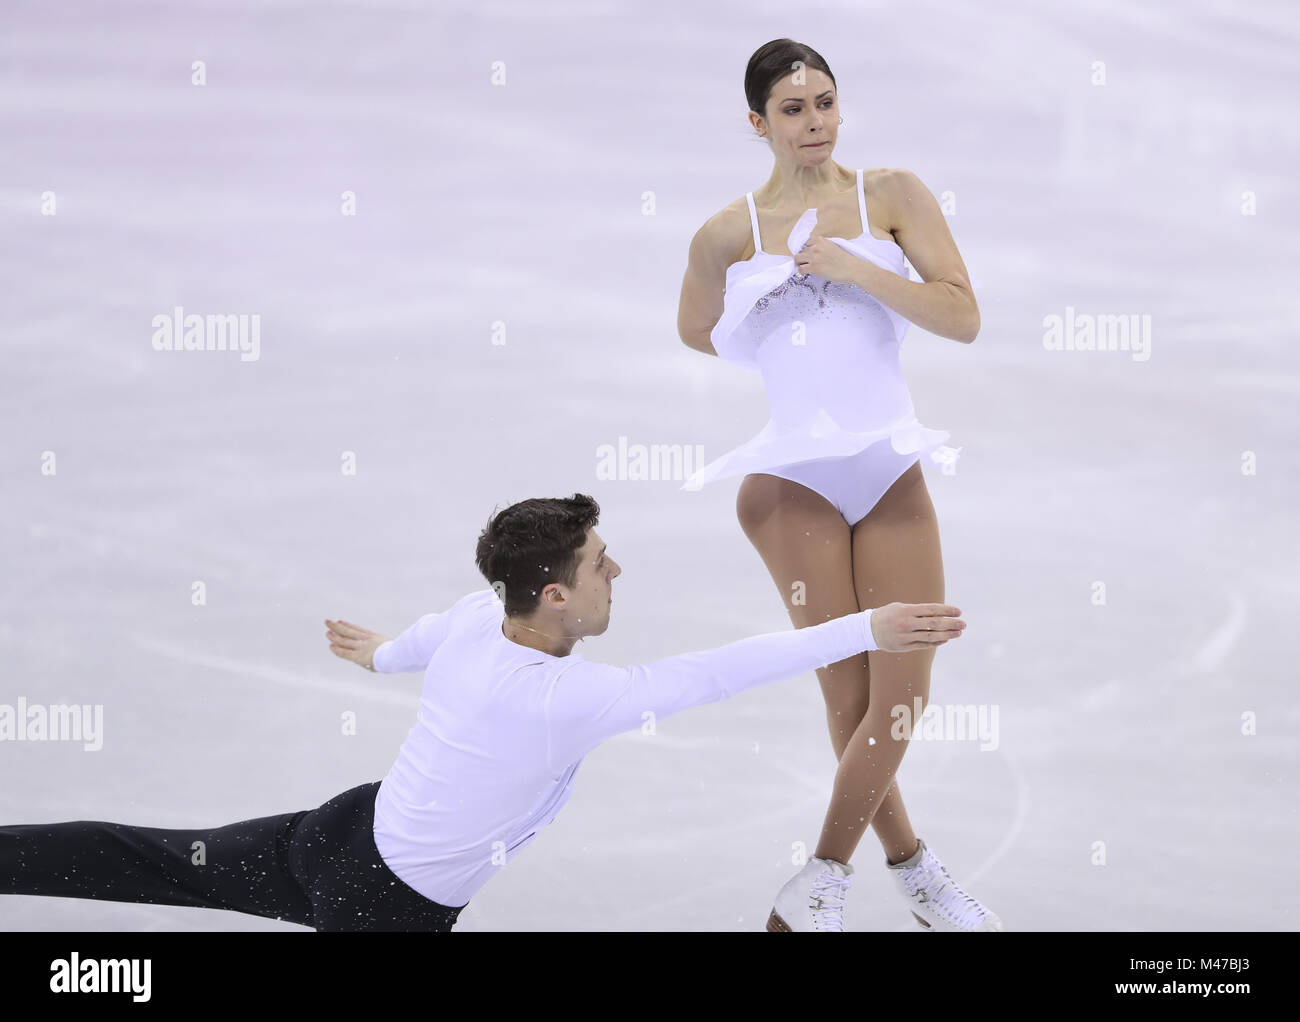 Pyeongchang, Corée du Sud. Feb 15, 2018. Les athlètes olympiques de la Russie Evgenia Tarasova (R) et Vladimir Morozov en concurrence au cours de la paire skating patinage libre du patinage artistique à l'occasion des Jeux Olympiques d'hiver de PyeongChang 2018, à Gangneung Ice Arena, de Corée du Sud, le 15 février 2018. Evgenia Tarasova et Vladimir Morozov a obtenu la 4ème place dans le cas du patinage en couple avec 224,93 points au total. Credit : Han Yan/Xinhua/Alamy Live News Banque D'Images